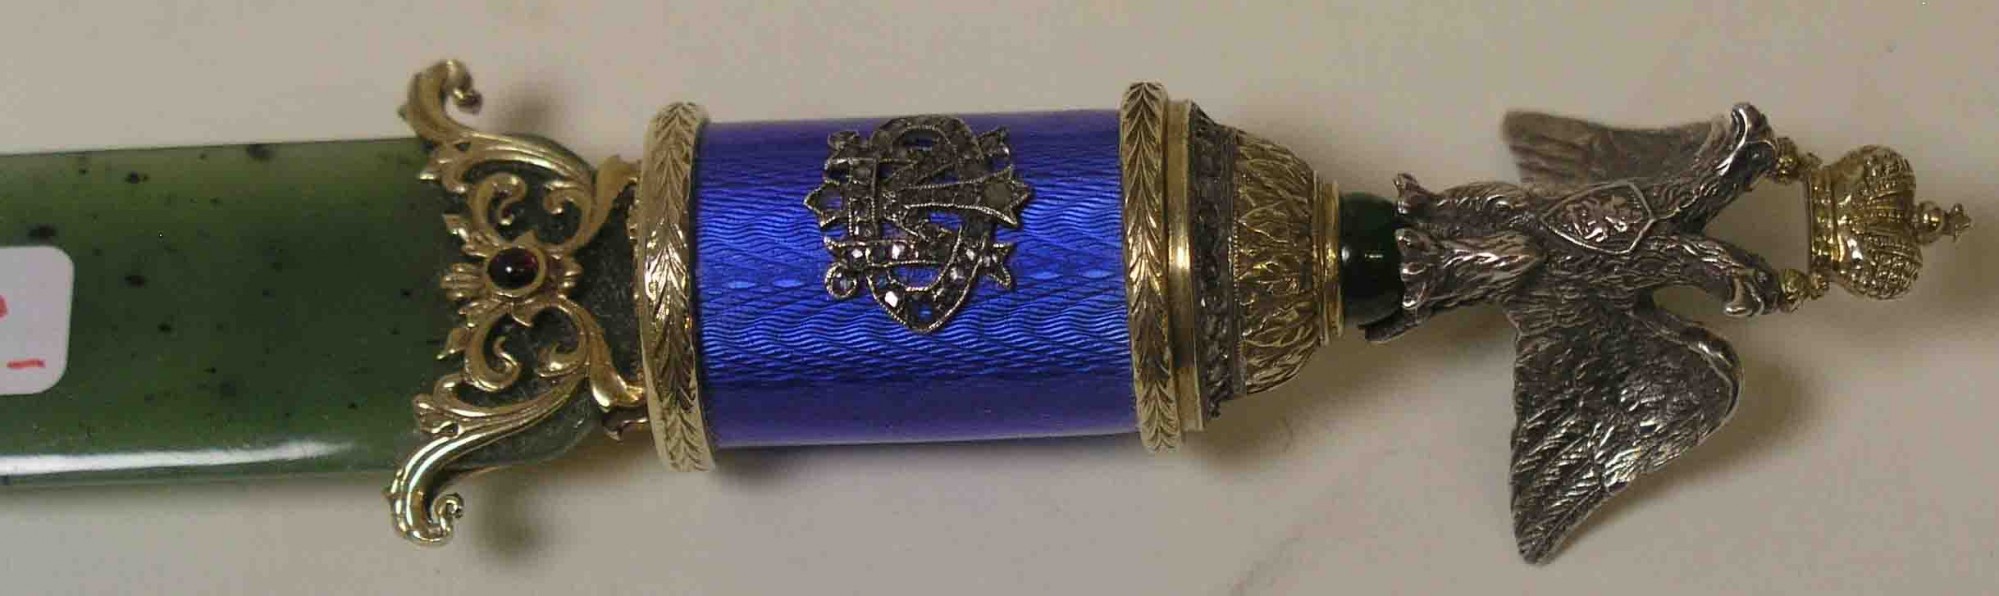 Brieföffner. Russische Juwelierarbeit. Klinge aus Nephrit. Griff aus Silber mitTeilvergoldung, - Image 3 of 3